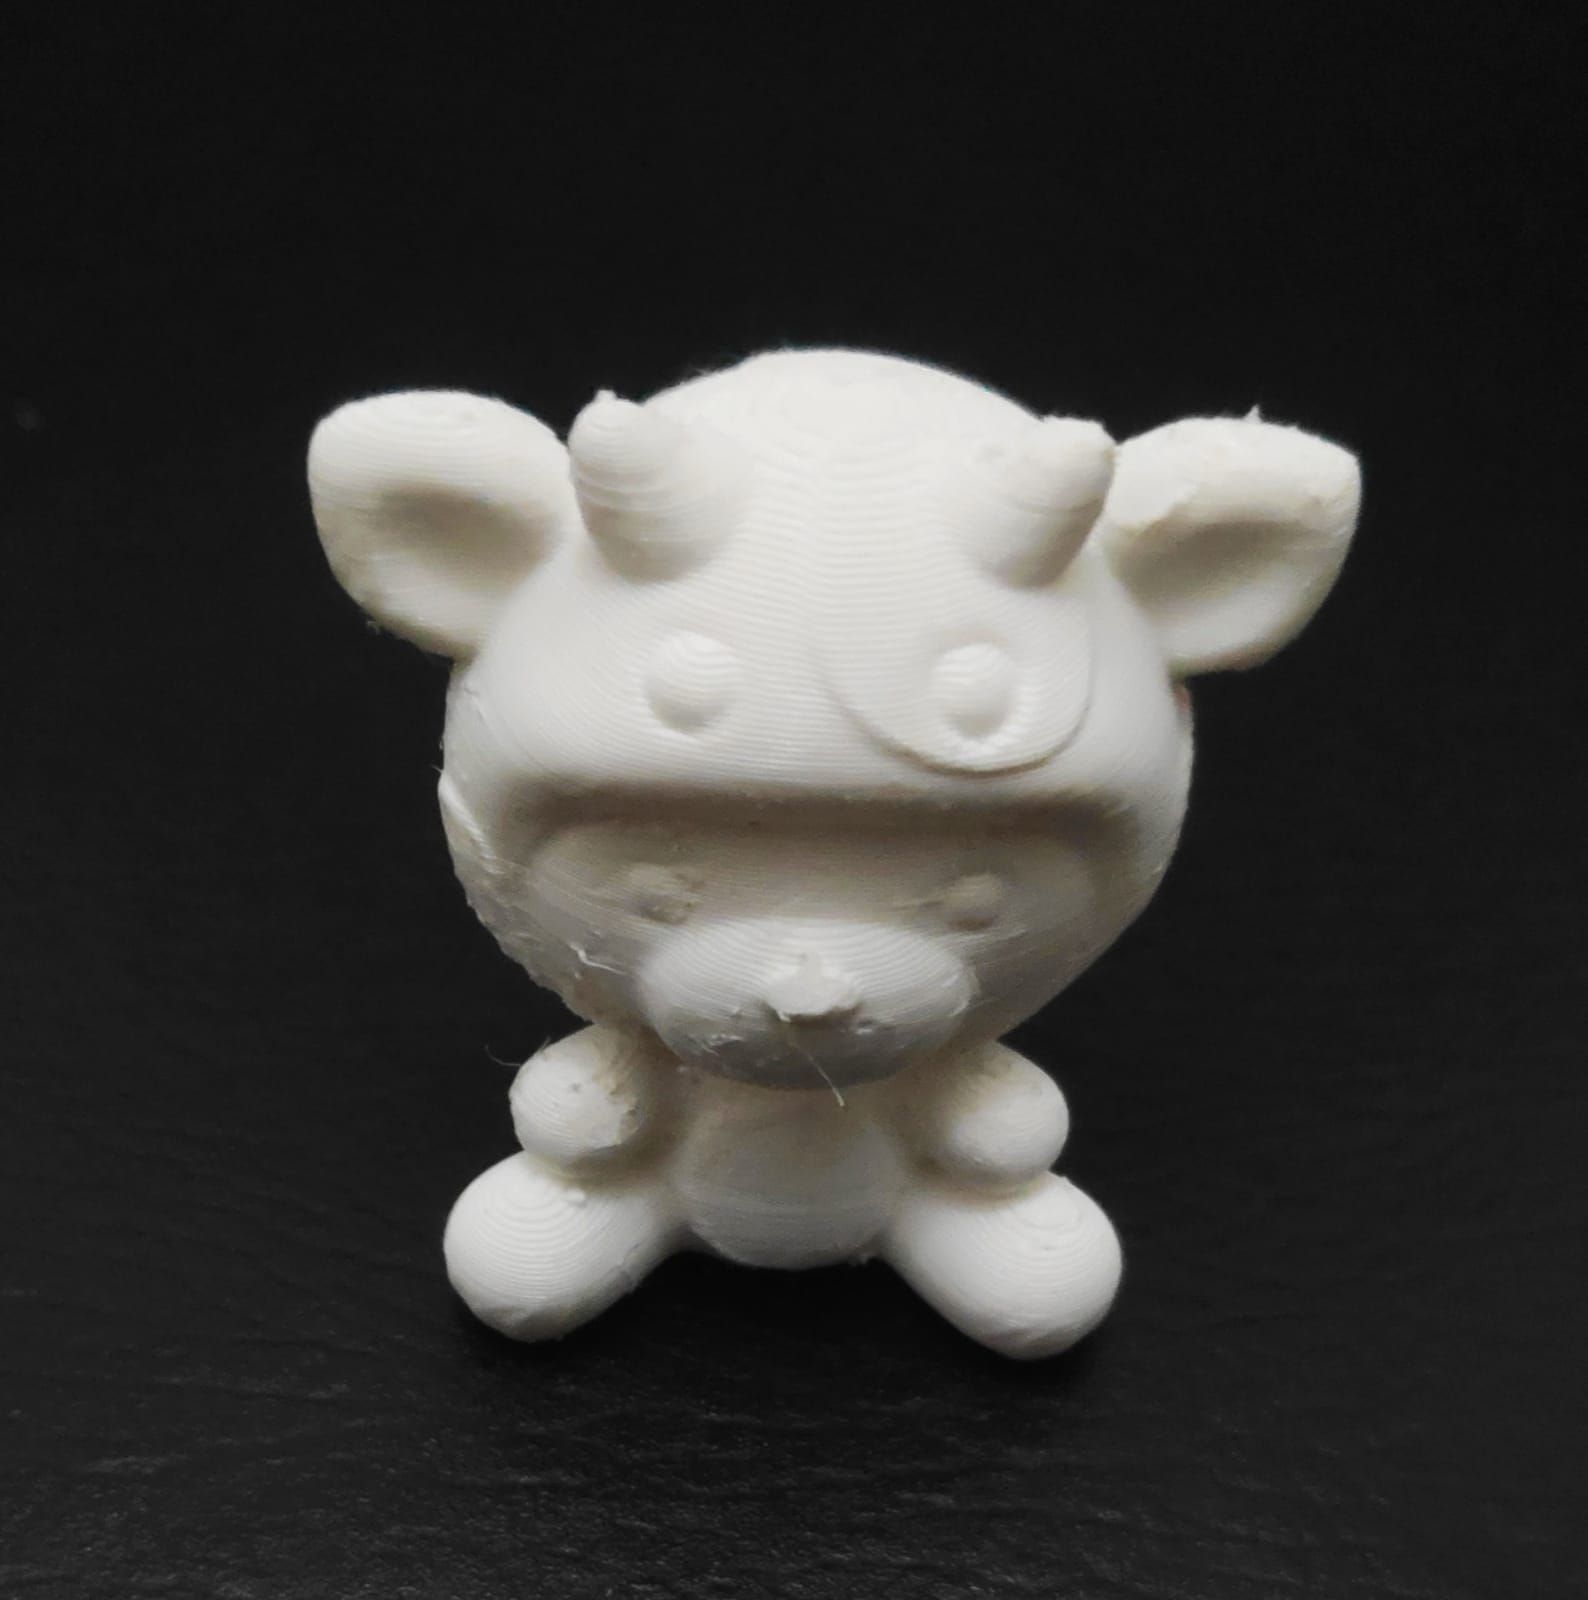 BearCowHat7.jpg Download file Bear Cow Hat • 3D printing template, Usagipan3DStudios